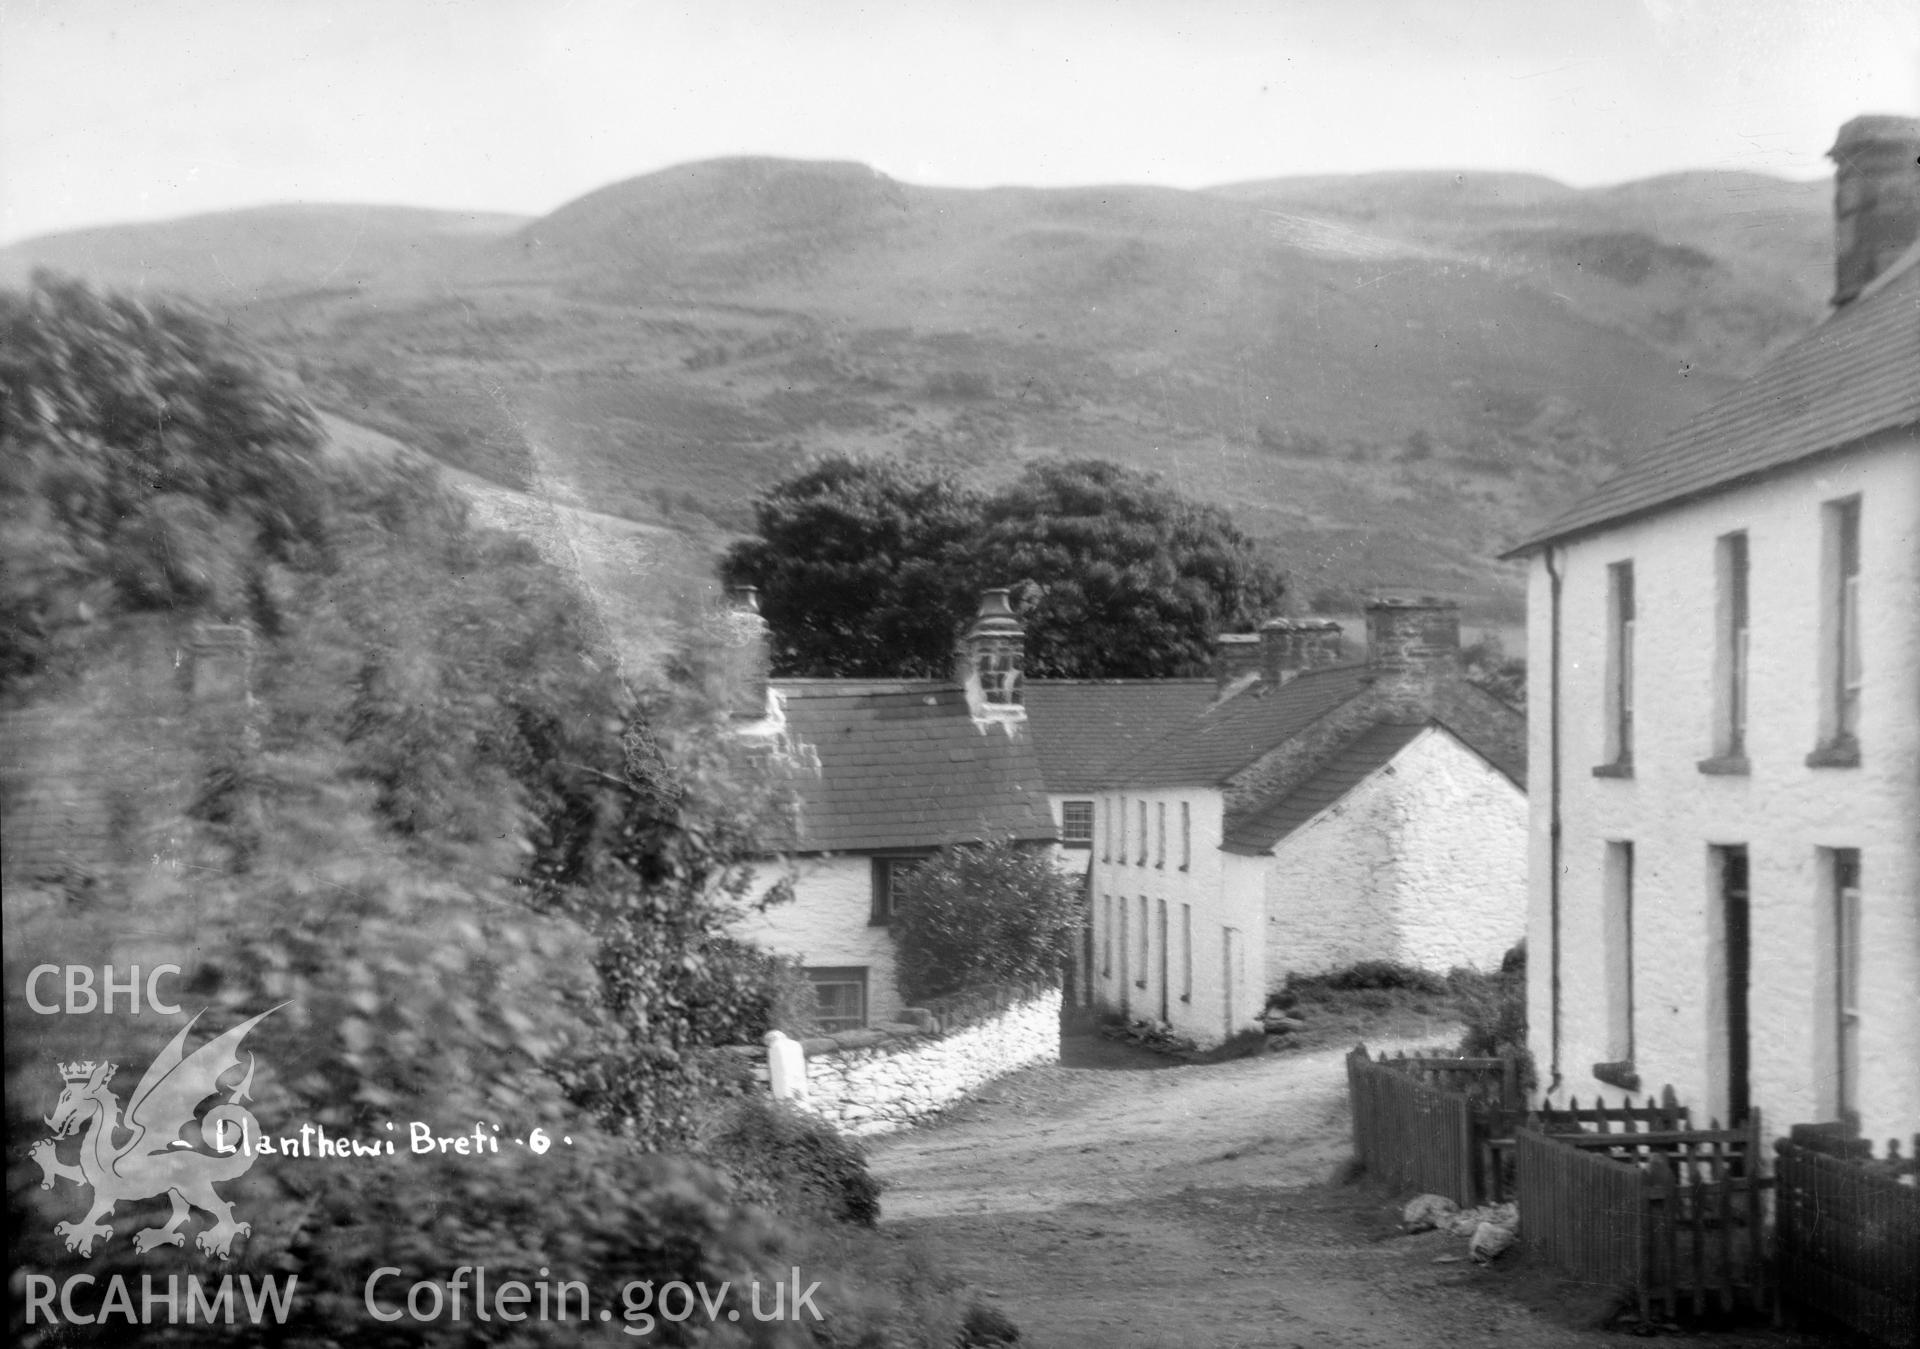 View of Llanddewi Brefi taken by W A Call circa 1920.